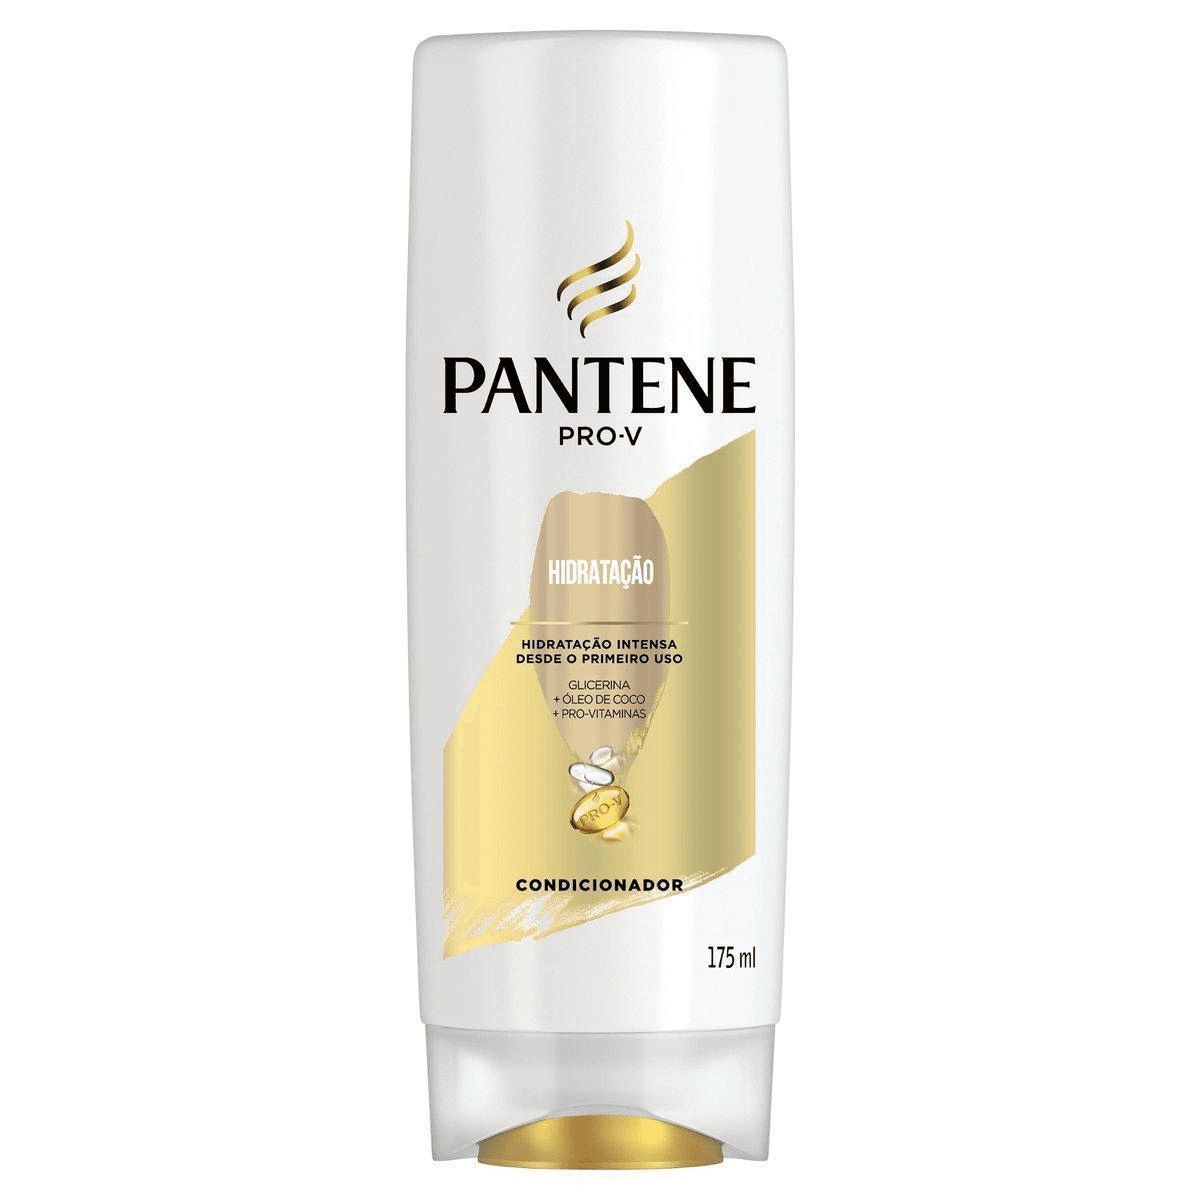 Condicionador Pantene Pro-V Hidratação frasco com 175 ml